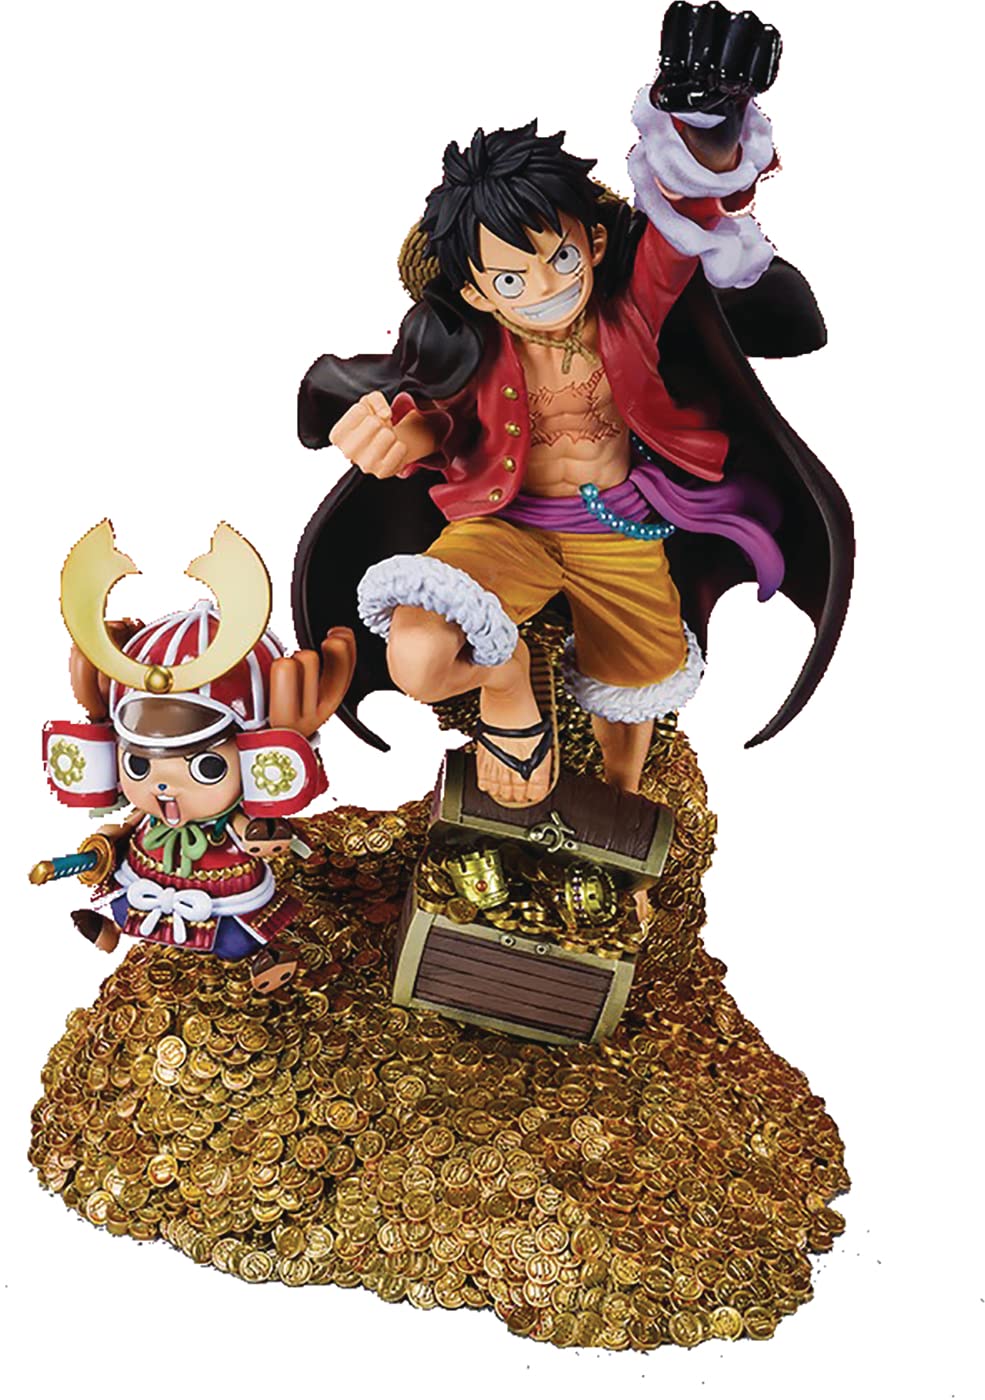 Figuarts Zero One Piece Luffy hiện đại: Sản phẩm đầu tiên của dòng sản phẩm Figuarts Zero One Piece Luffy hiện đại đã chính thức được ra mắt! Với thiết kế đẹp mắt và chất liệu cao cấp, sản phẩm này sẽ khiến bạn hài lòng và là món quà tuyệt vời dành tặng cho bất kỳ fan của One Piece. Hãy sở hữu ngay để trải nghiệm cảm giác thật sự đặc biệt.